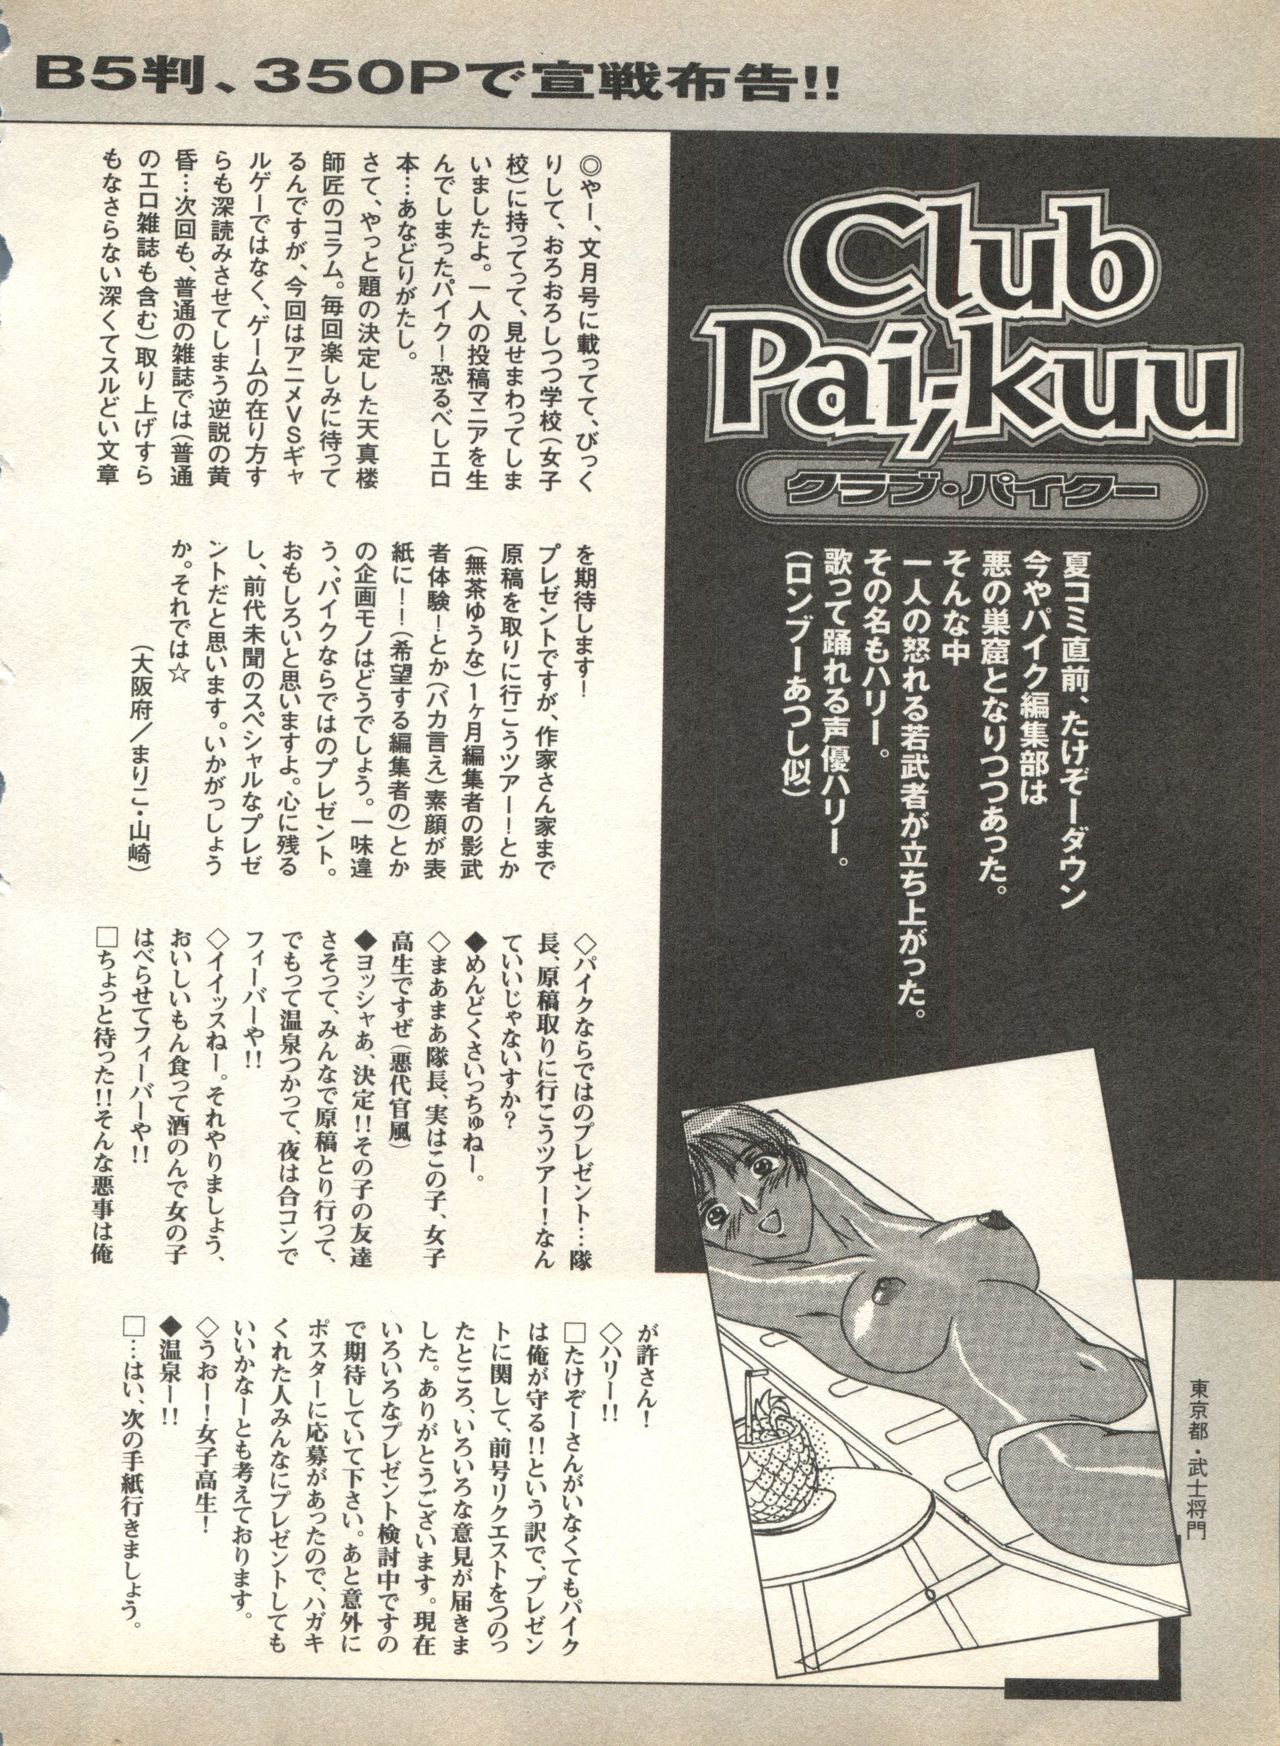 [アンソロジー] パイク Pai;kuu 1998 August Vol.12 葉月